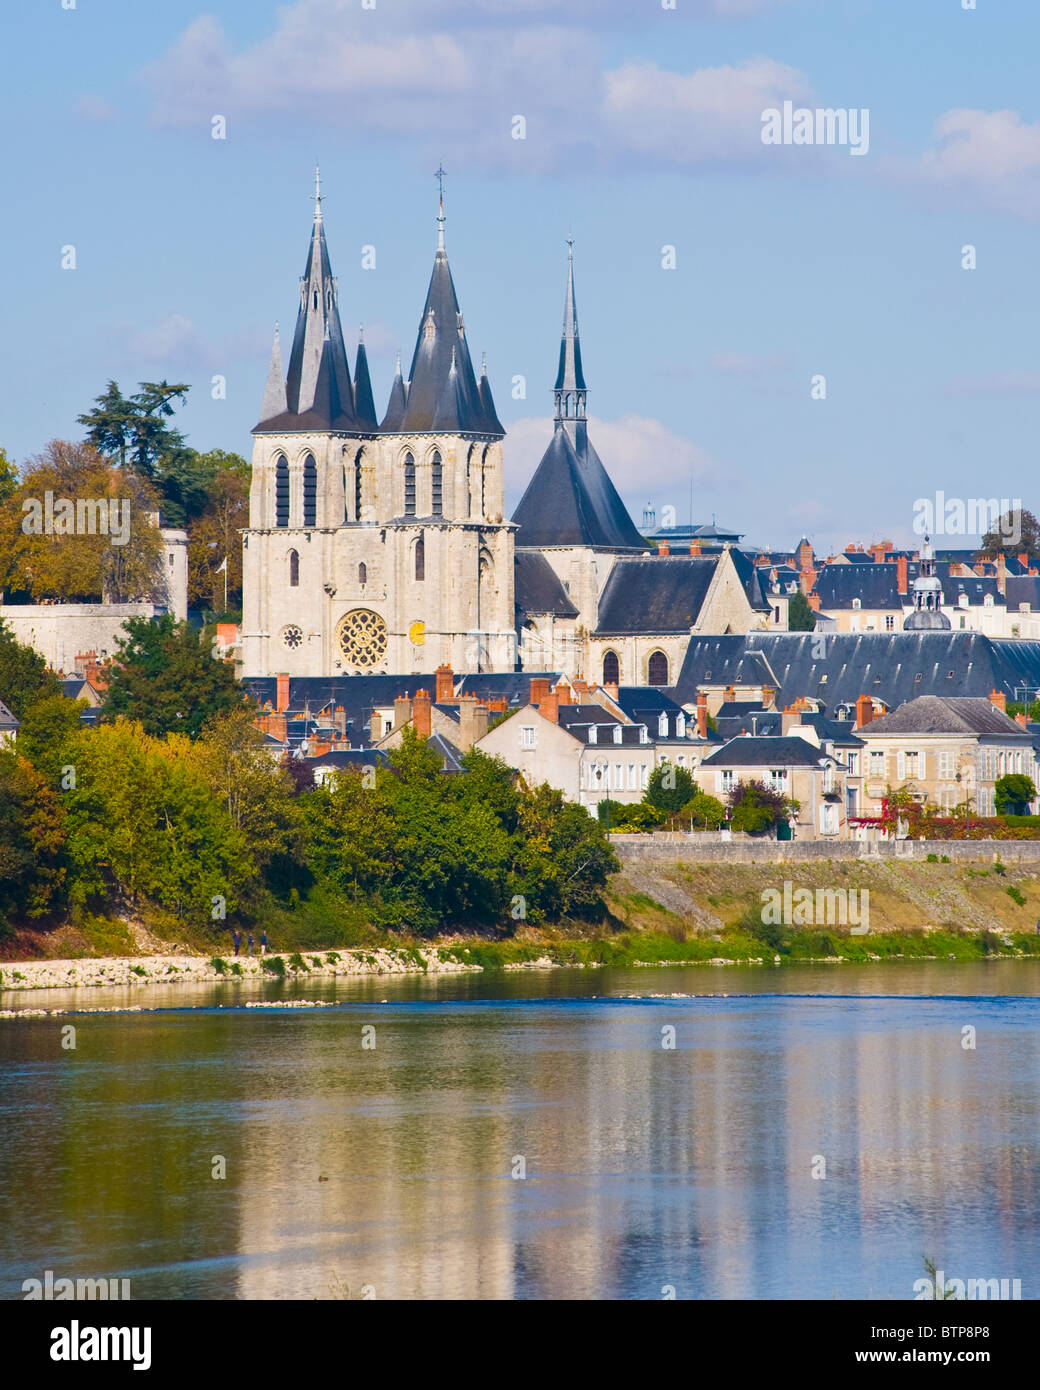 River Loire, Blois, Touraine, France Stock Photo